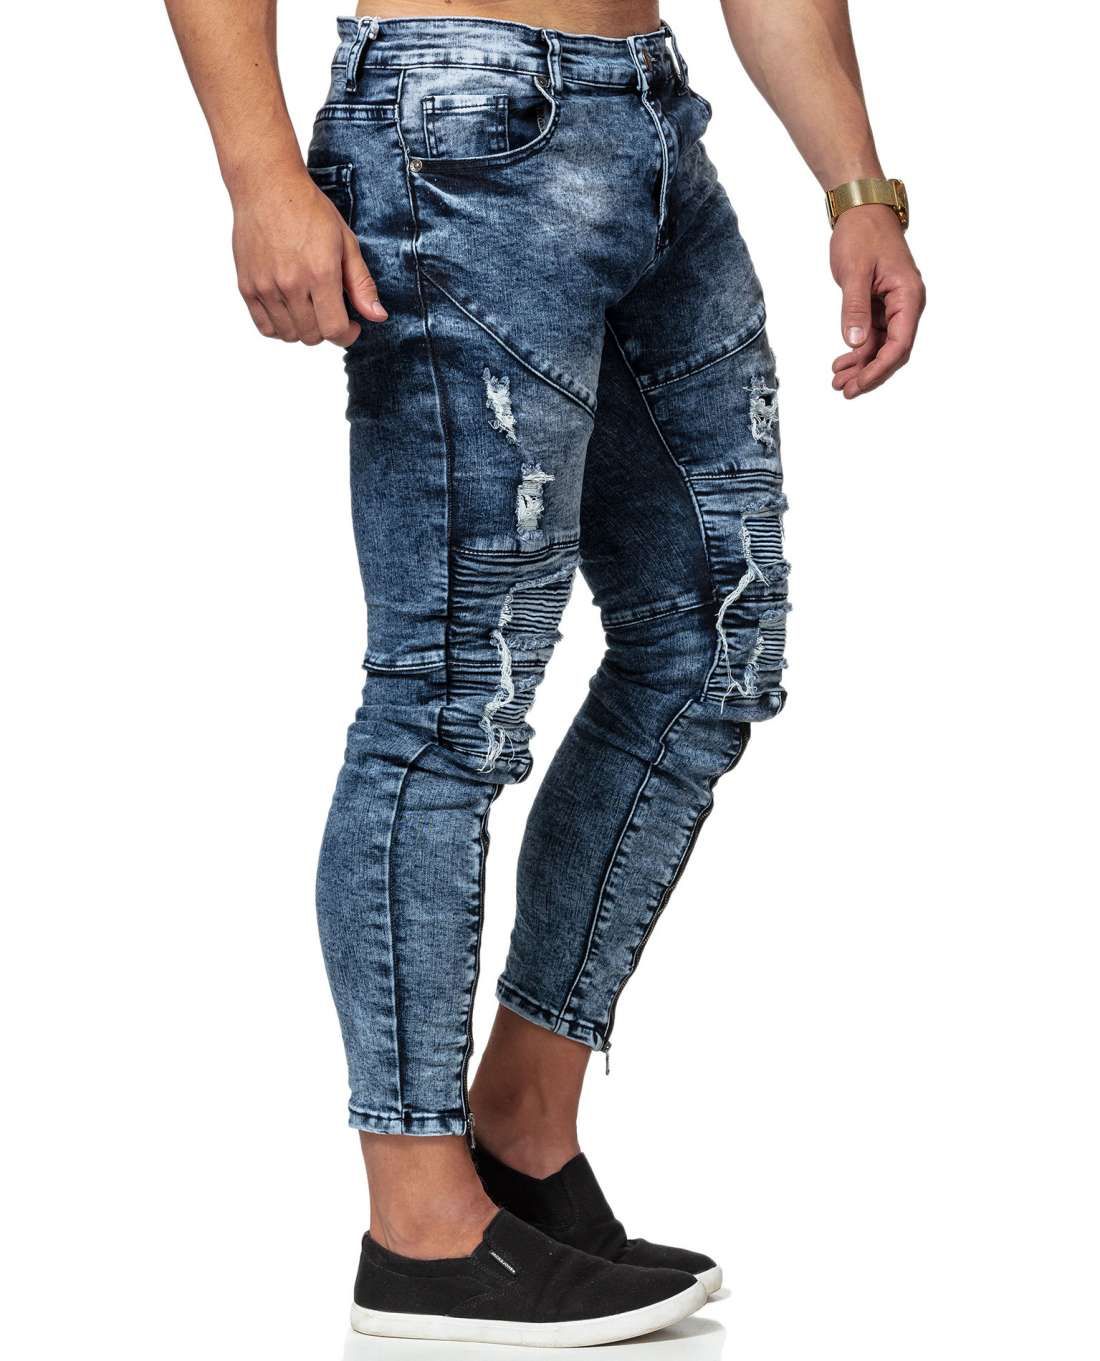 Streetwear Jeans Blue L32 Jerone - 8240 - Jeans - Jerone.com